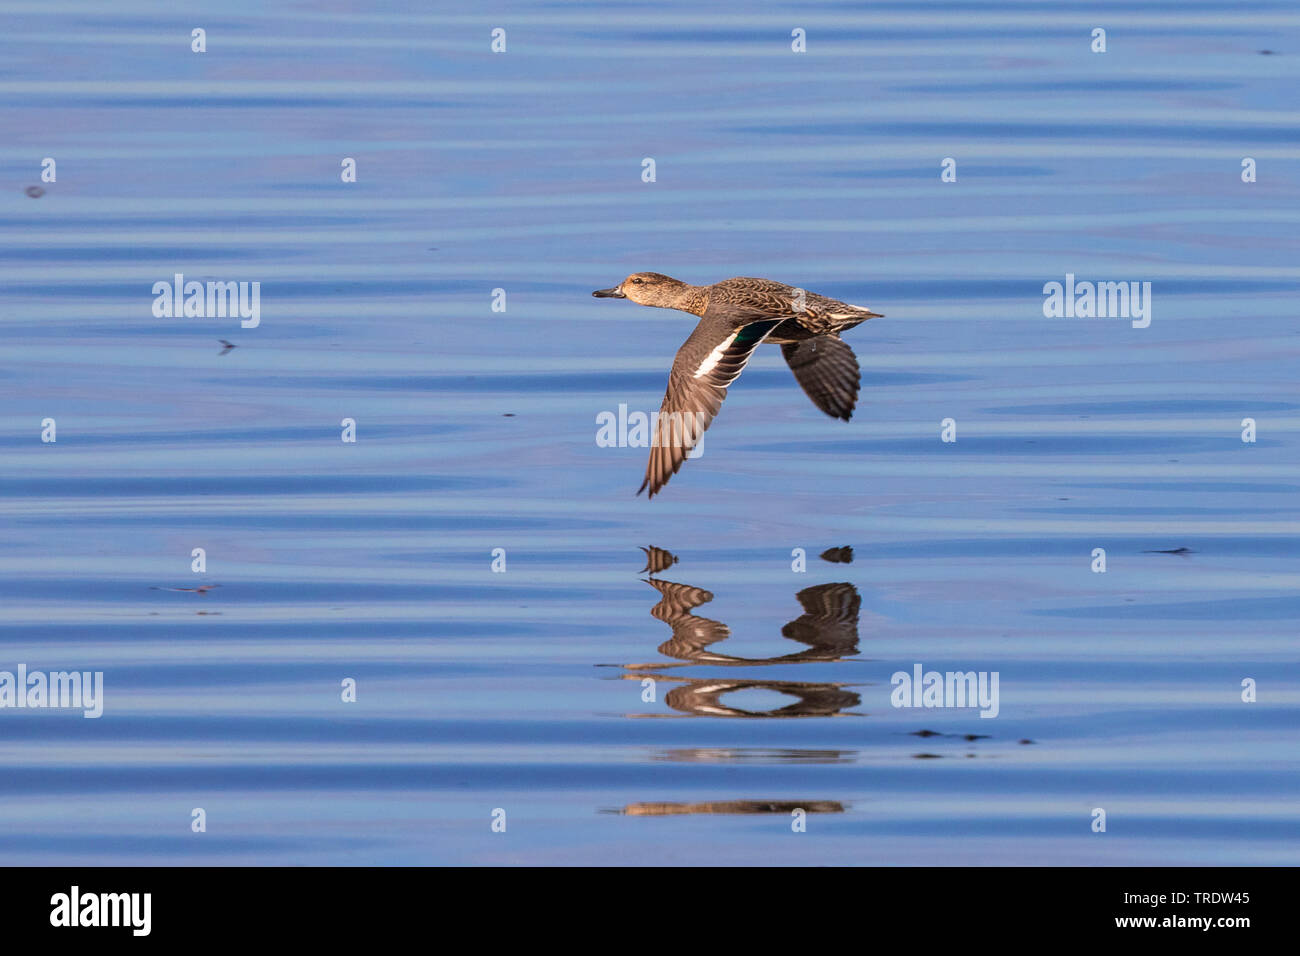 Le canard chipeau (Anas strepera, Mareca strepera), en vol au dessus de la surface de l'eau, vue de côté, l'Allemagne, la Bavière, le lac de Chiemsee Banque D'Images